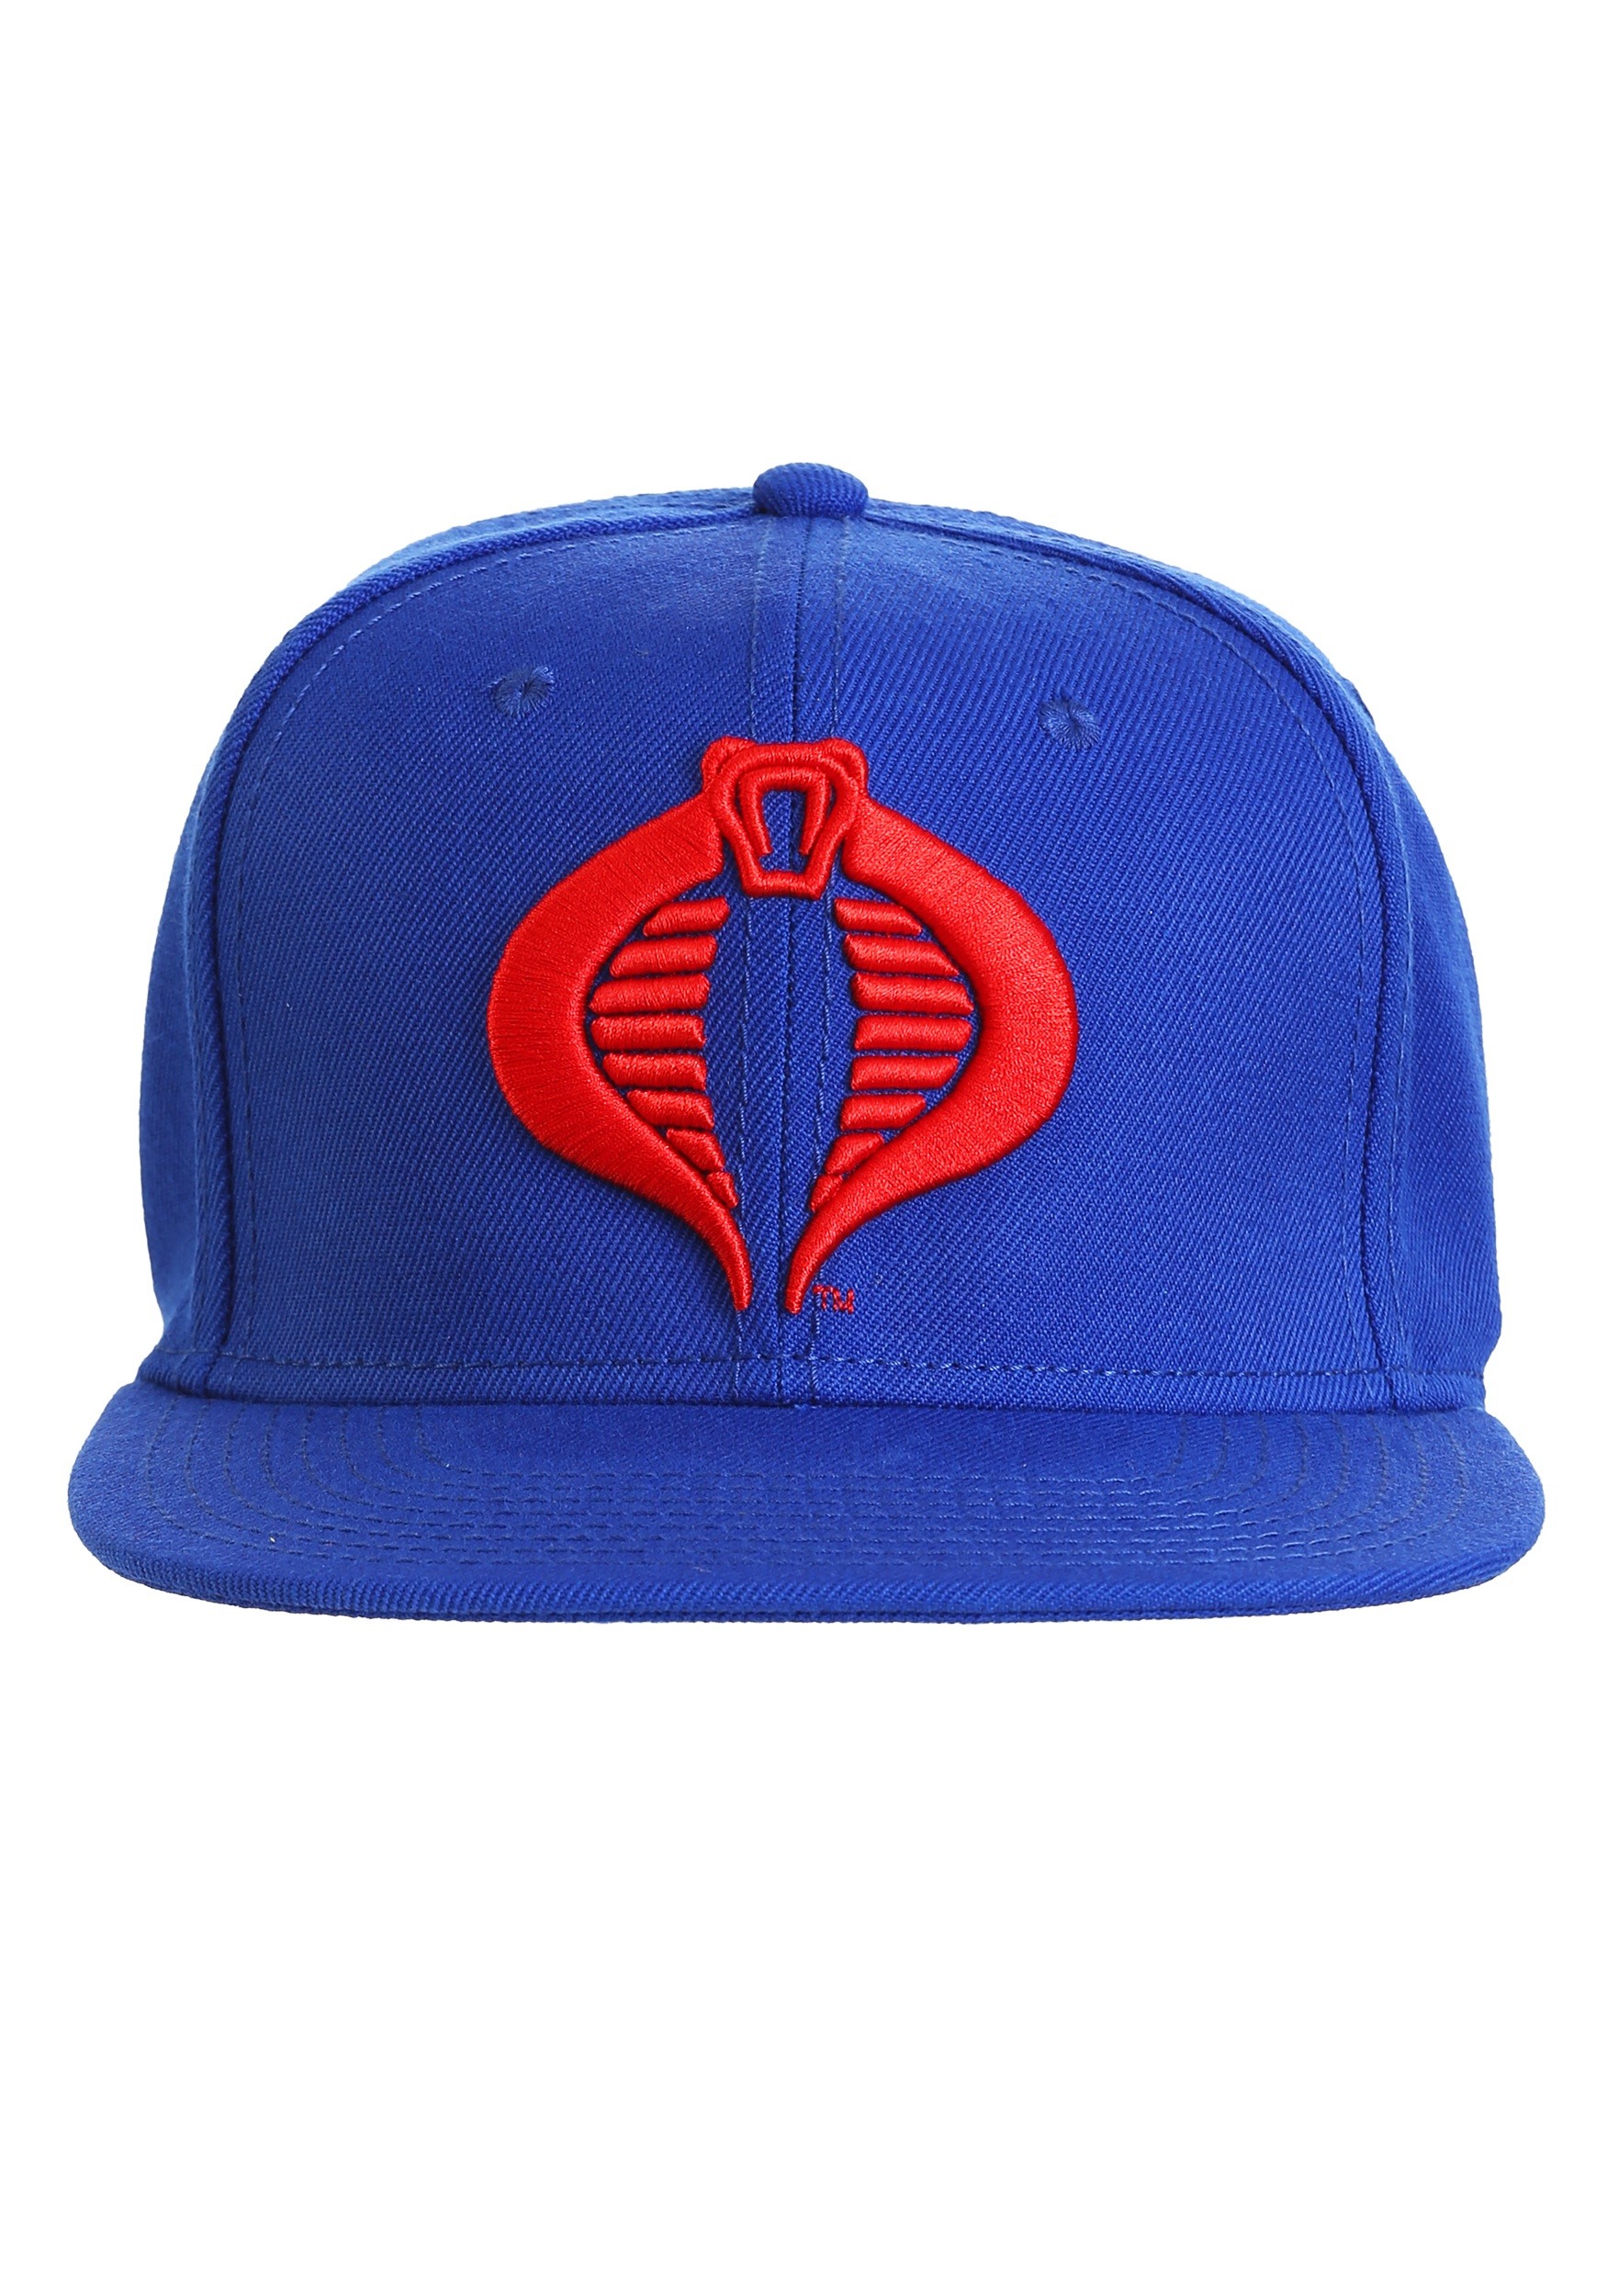 Logo Baseball/Trucker Cap/Hat w Patch Red/Blk GI JOE COBRA 